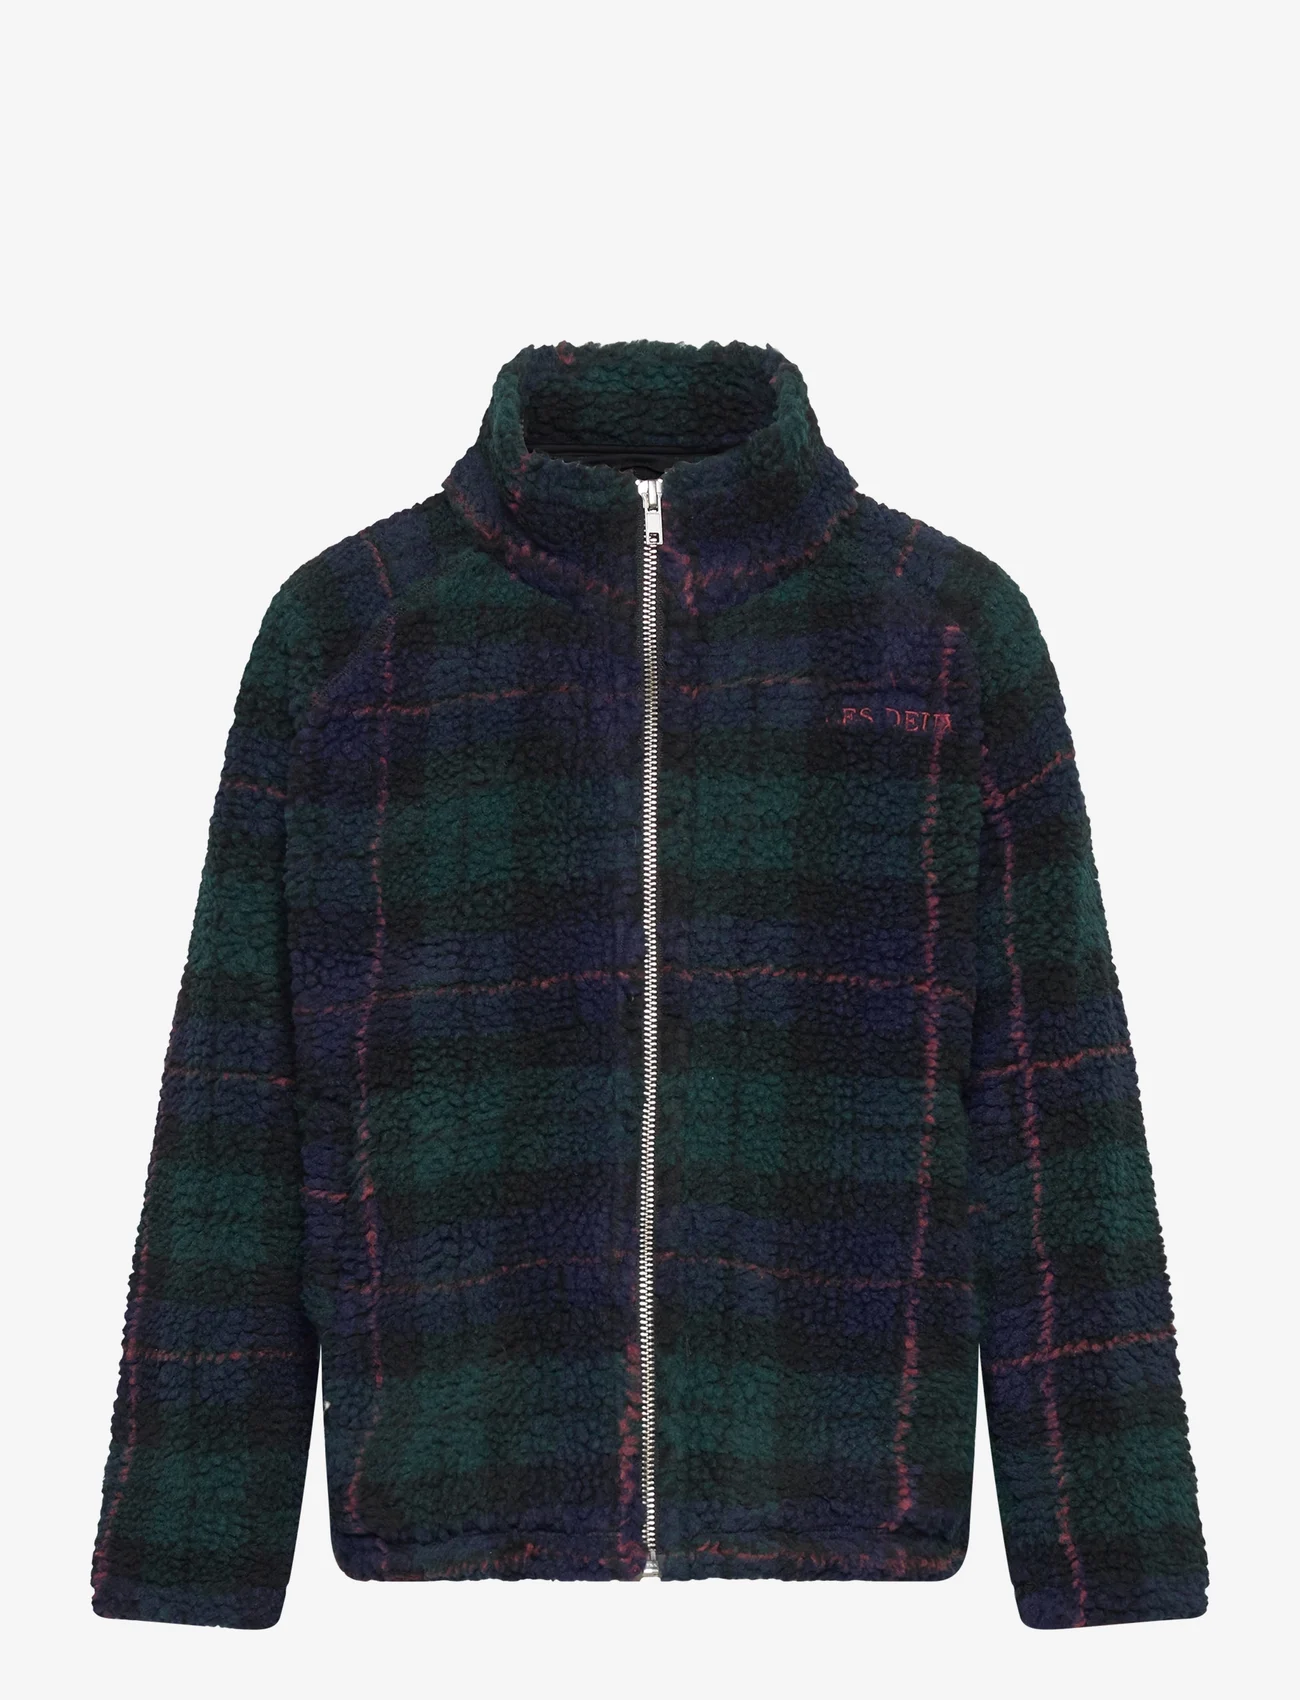 Les Deux - Ren Zipper Sweatshirt Kids - fleece jacket - pine green/dark navy - 0